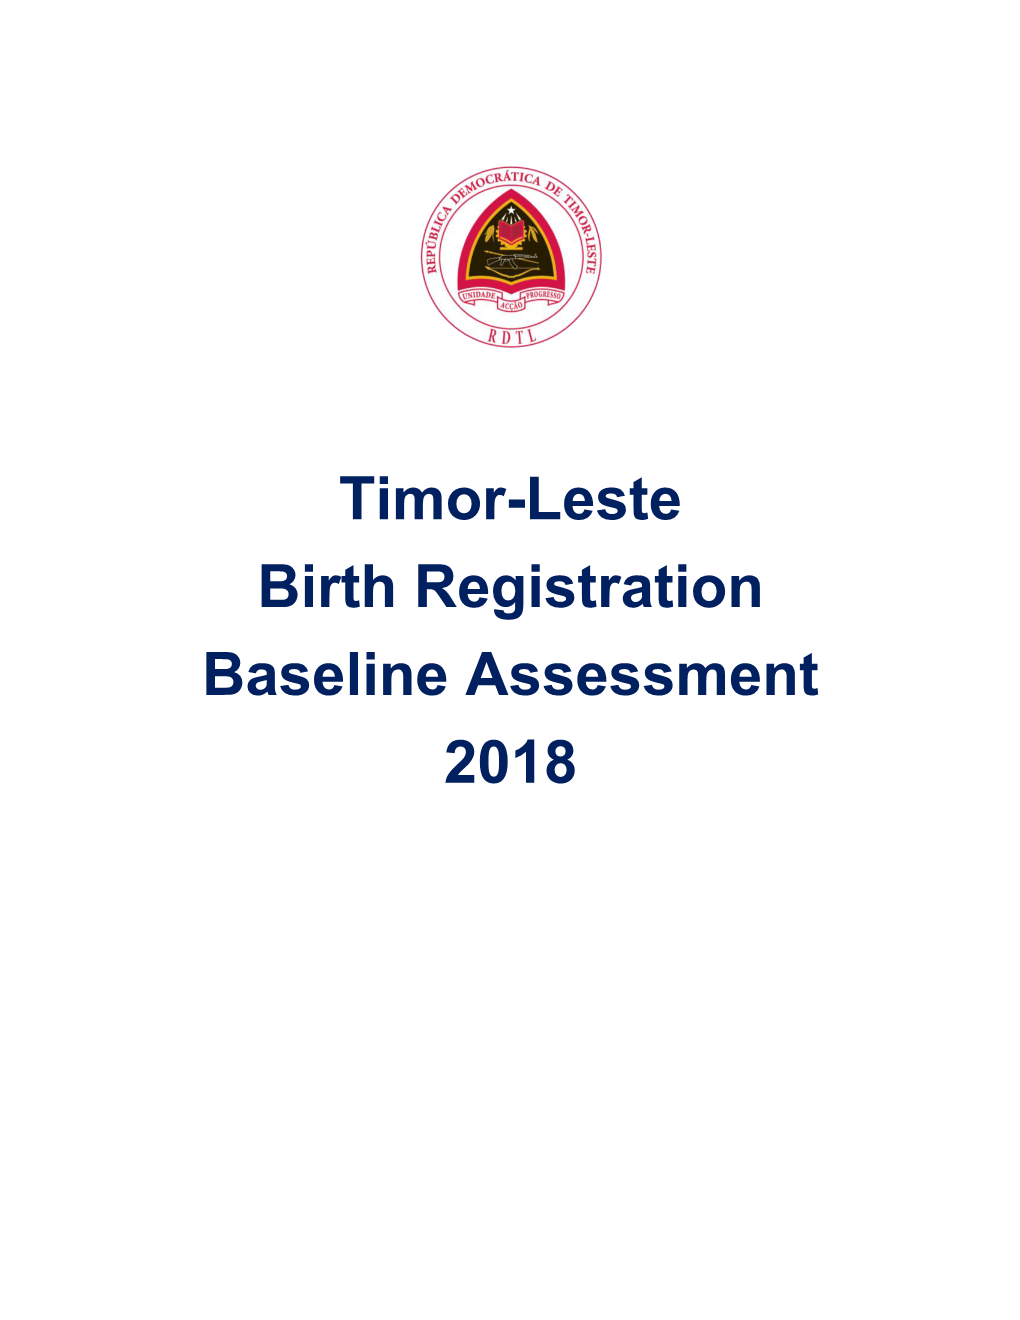 Timor-Leste Birth Registration Baseline Assessment